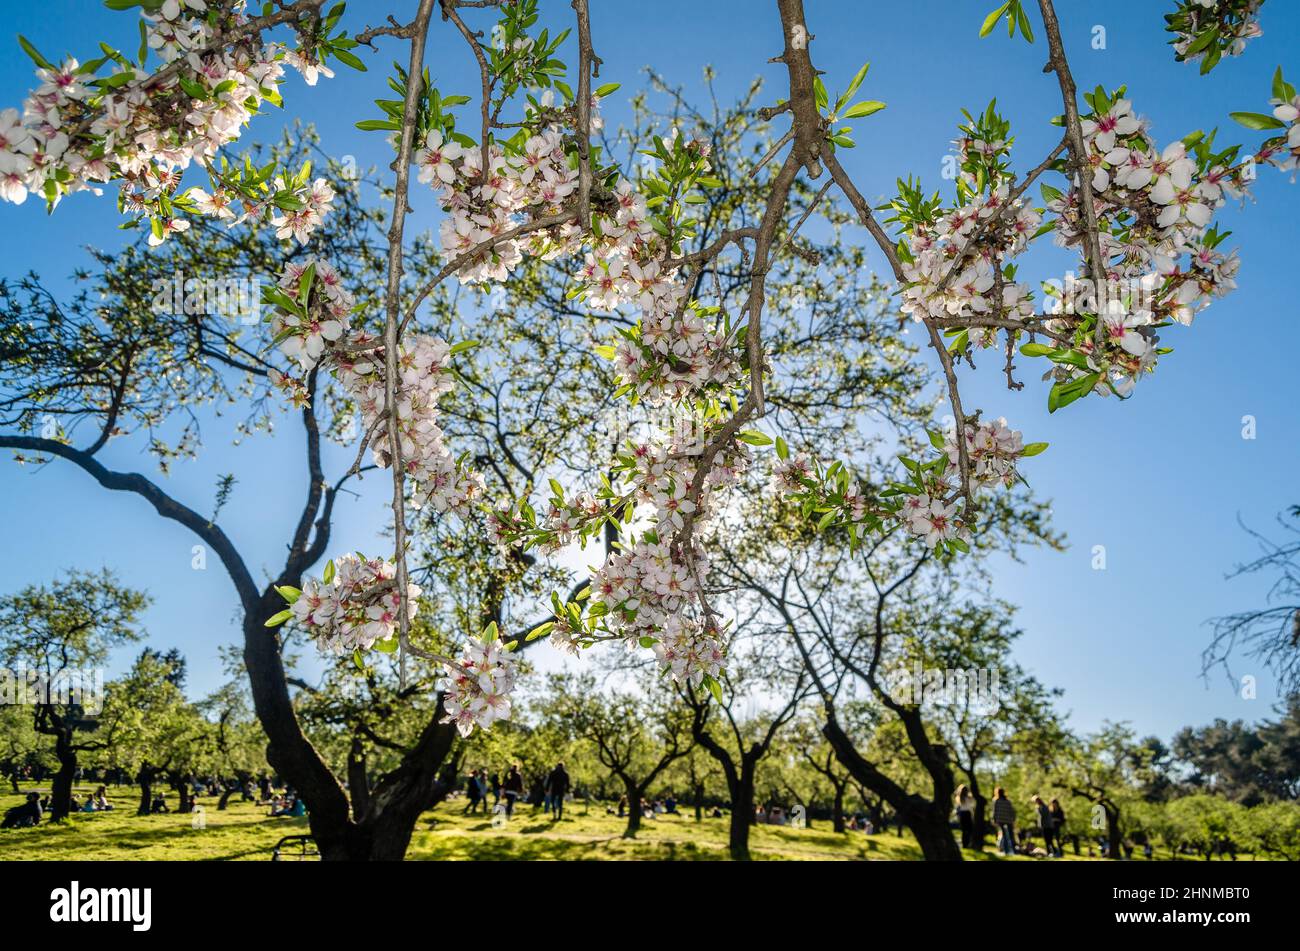 MADRID, SPAGNA - 13 MARZO 2021: La gente gode di una giornata di primavera soleggiata e visita la fioritura degli alberi di mandorle nel Parco Quinta de los Molinos a Madrid, Spagna Foto Stock